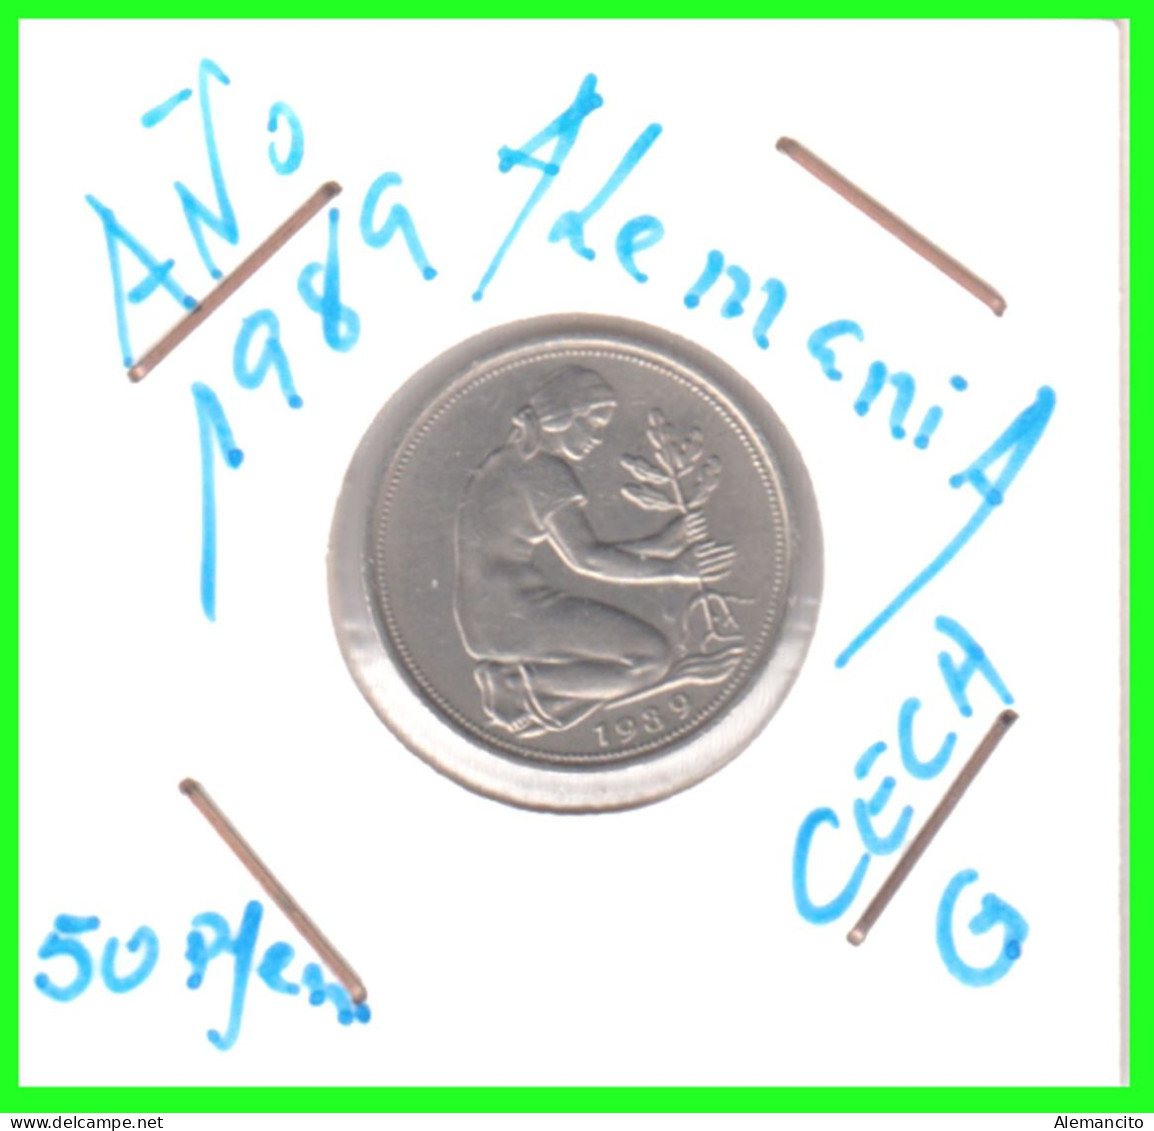 ALEMANIA - DEUTSCHLAND - GERMANY-MONEDA DE LA REPUBLICA FEDERAL DE ALEMIANIA DE 50 Pfn .DEL AÑO 1989 CECA - G - KARLRUHE - 50 Pfennig